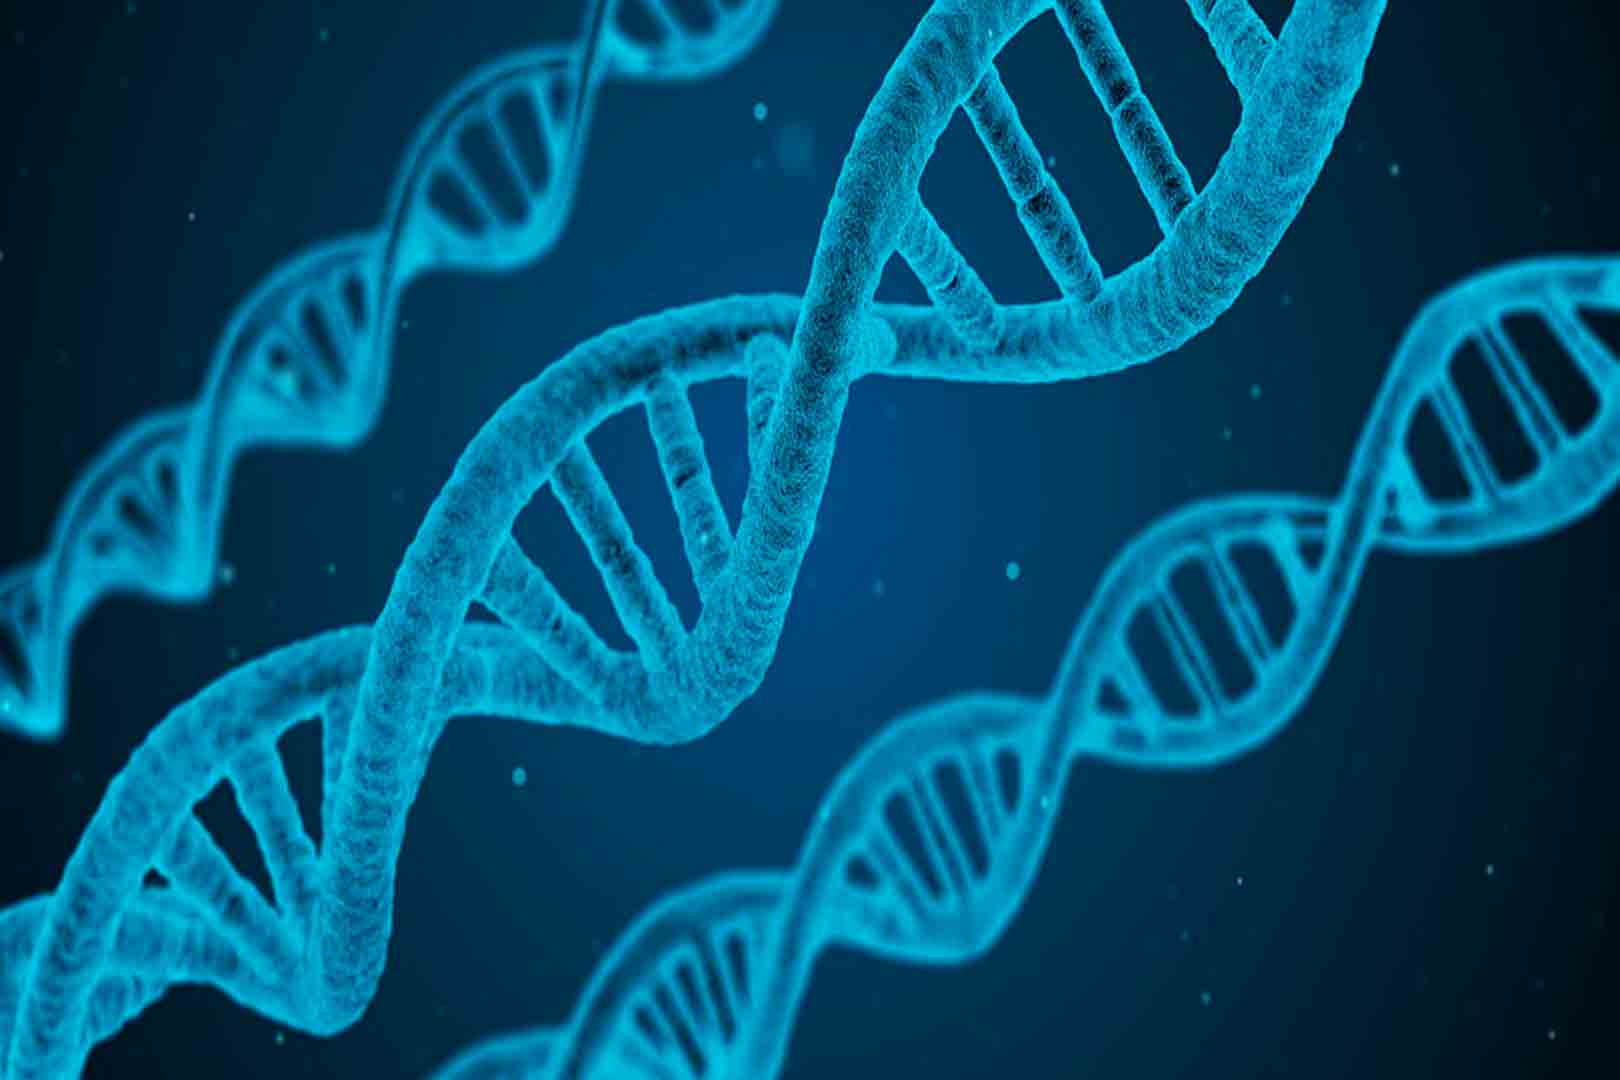 Cuestionamientos éticos rodean a las futuras terapias genéticas